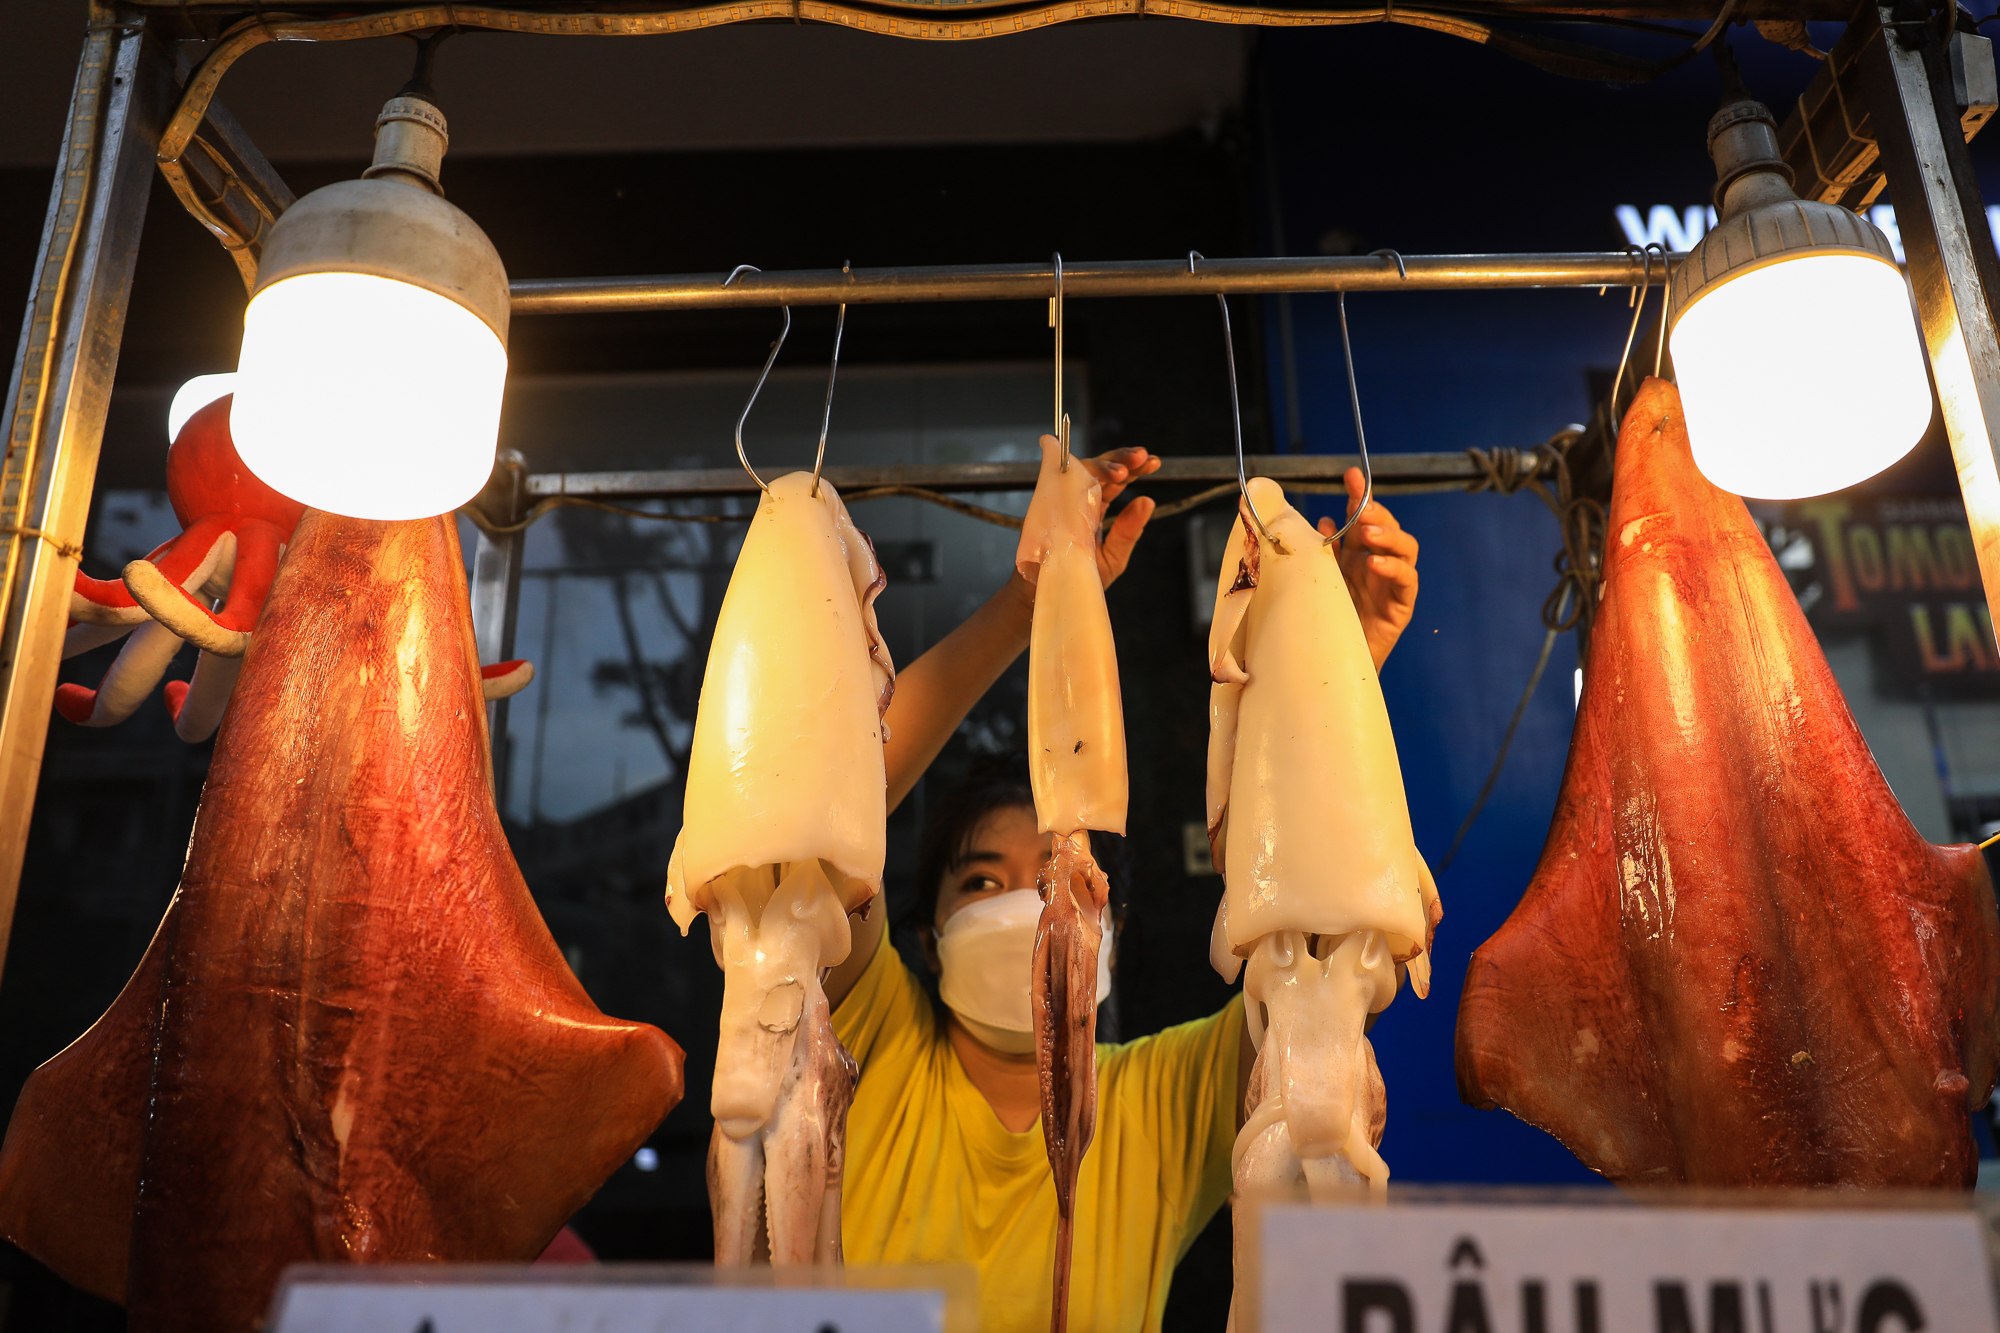 รถลากขนาดเล็กขายปลาหมึกยักษ์ ปลาหมึกยักษ์น้ำหนักหลายสิบกิโลกรัม เป็นที่นิยมอย่างมากในนครโฮจิมินห์ - ภาพที่ 3